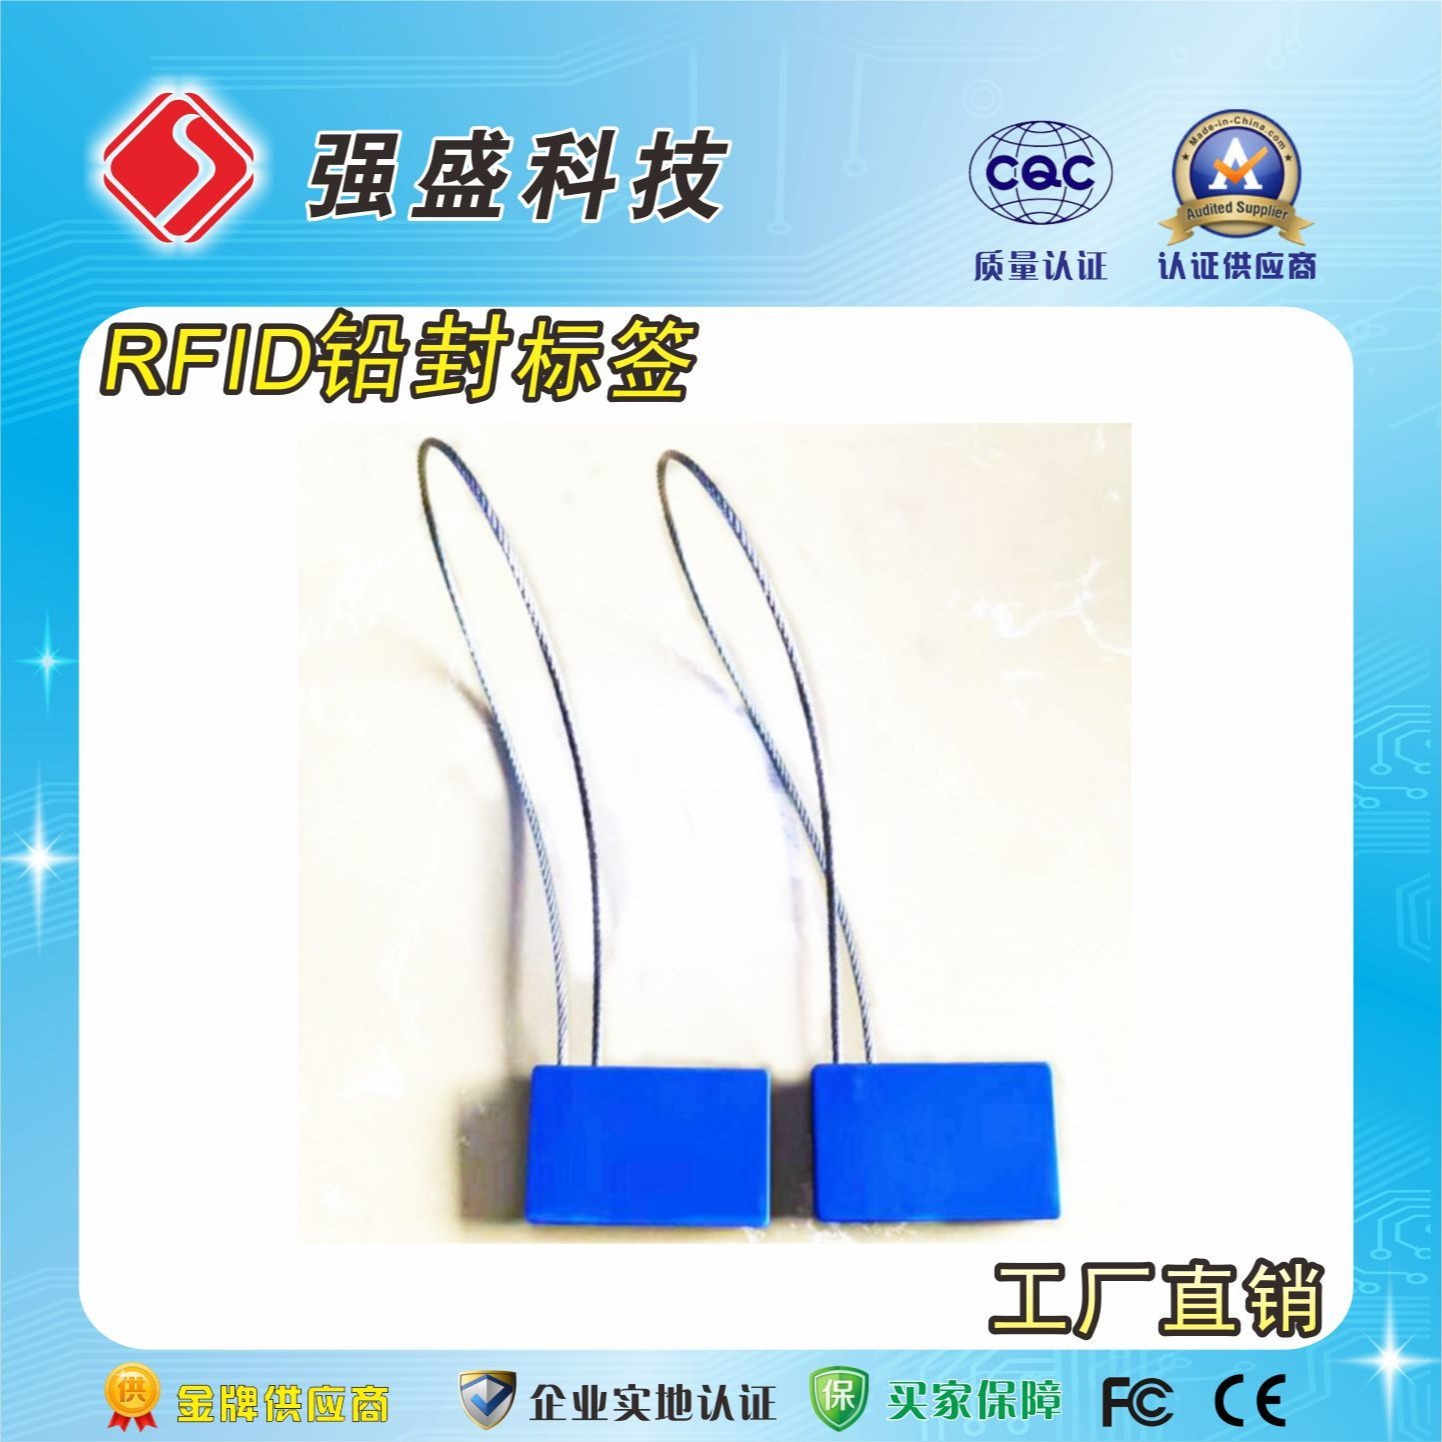 高频抗电缆标签 ISO15693 电缆设备管理 RFID电子标签